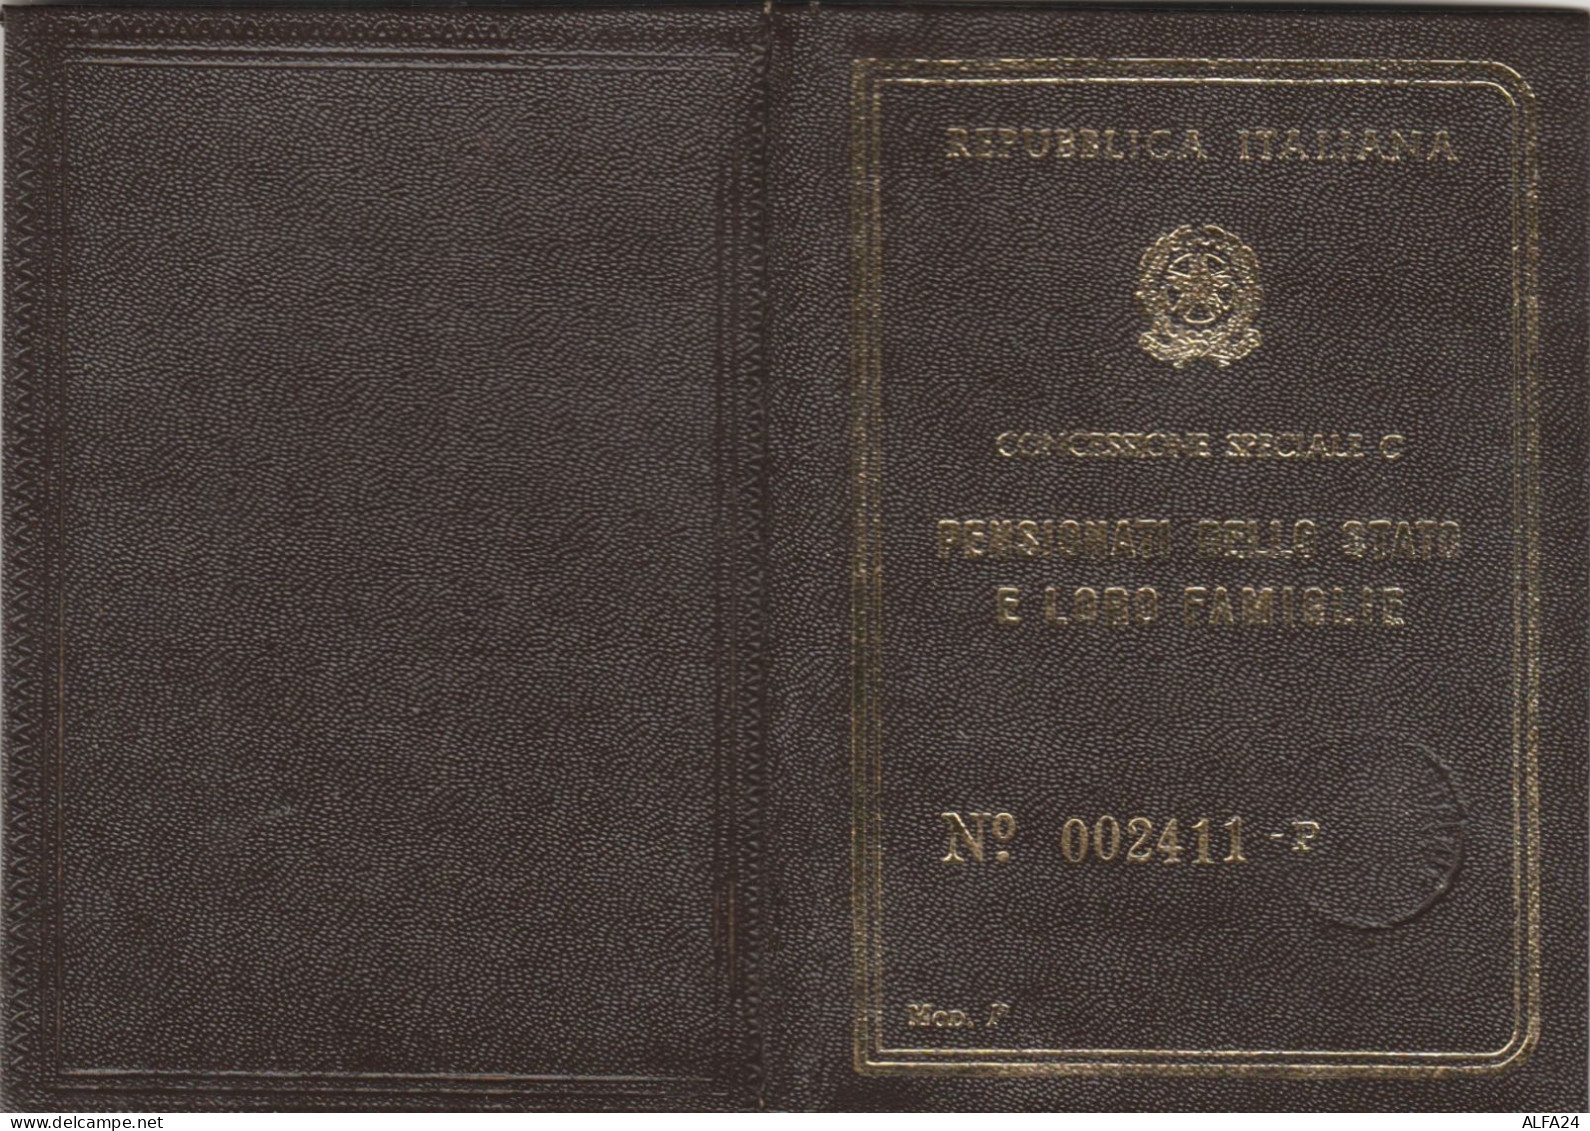 FERROVIE DELLO STATO CONCESSIONE C 1968 (XF122 - Europe